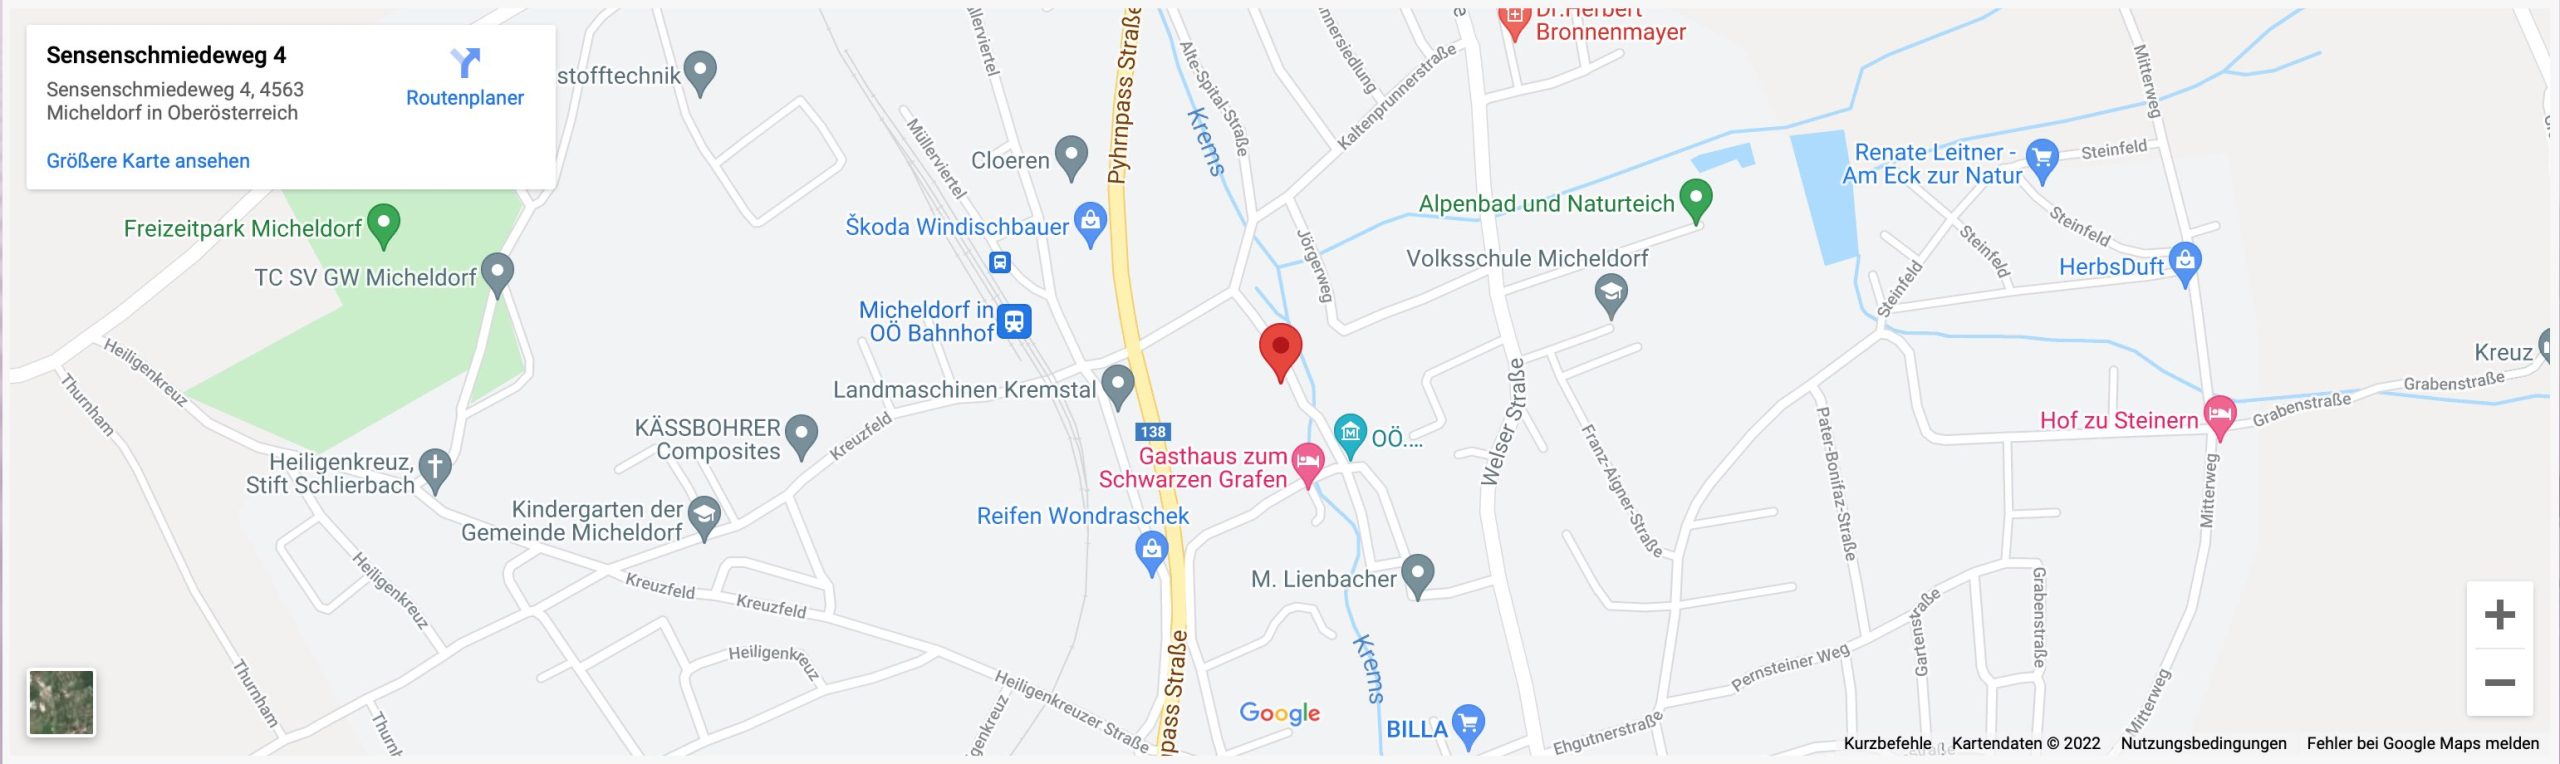 reinthaler-templ-google-map-vorschau